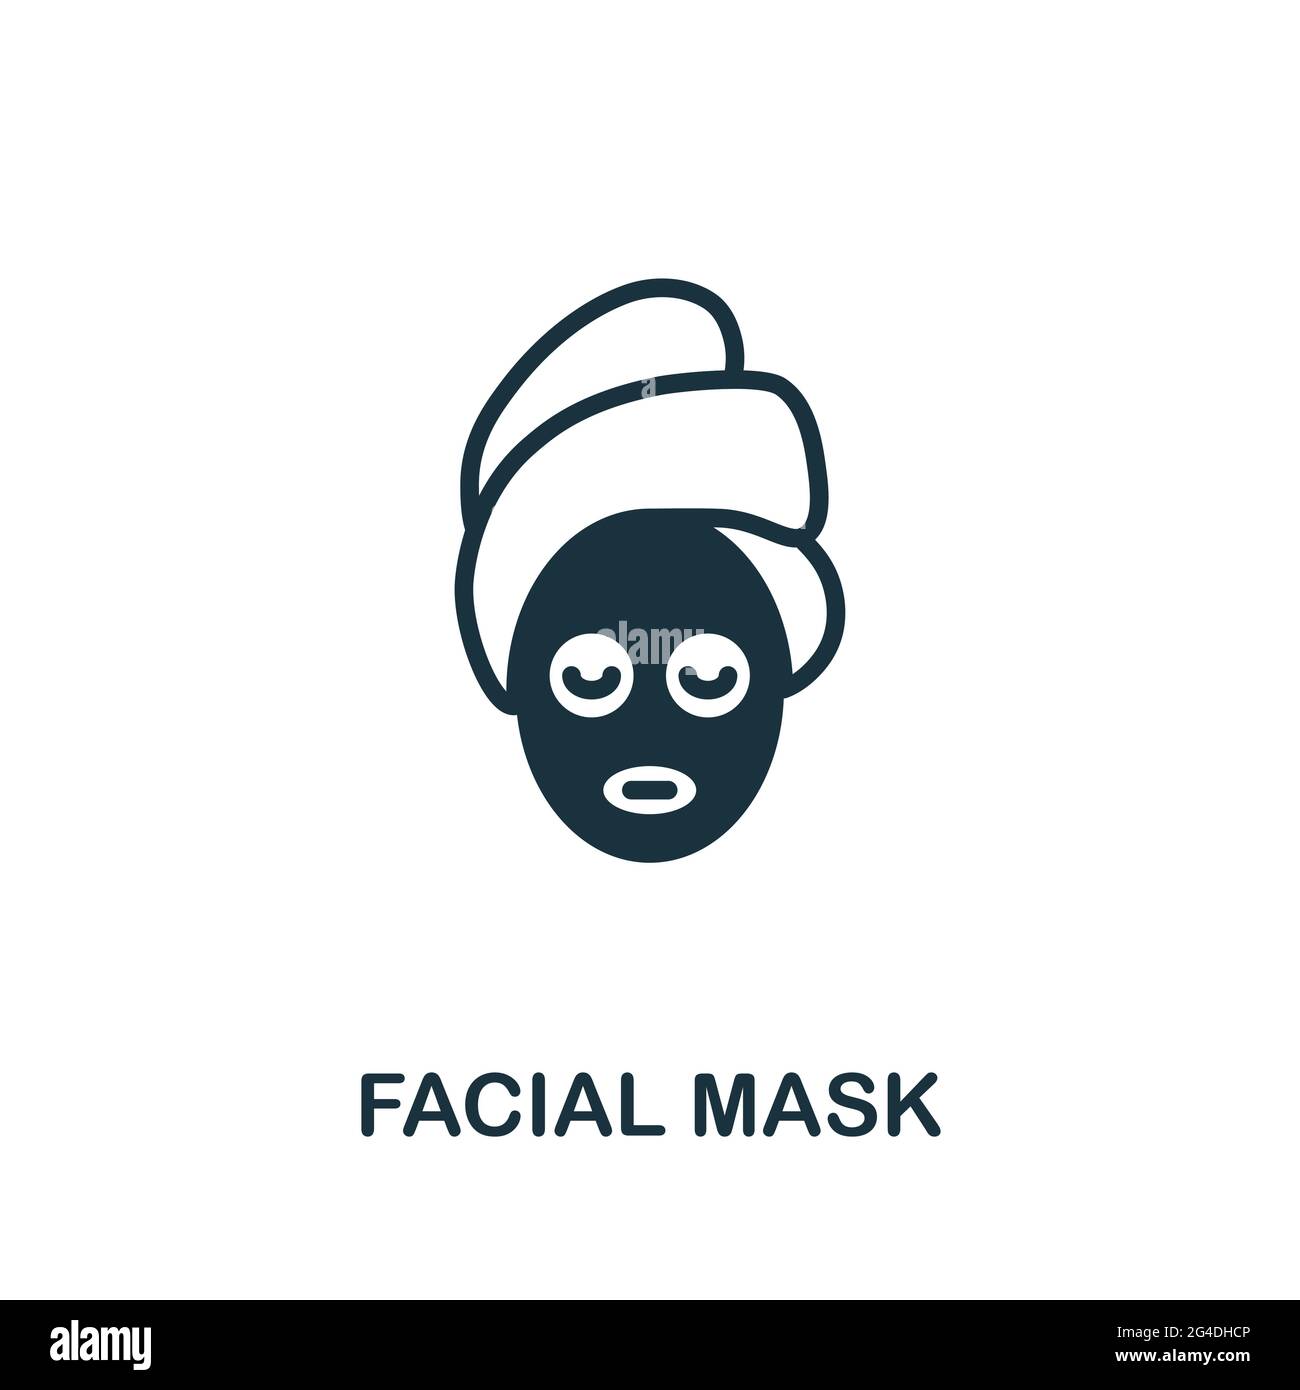 Icône masque facial. Élément simple monochrome de la collection sauna. Icône de masque facial créatif pour la conception Web, les modèles, les infographies et bien plus encore Illustration de Vecteur